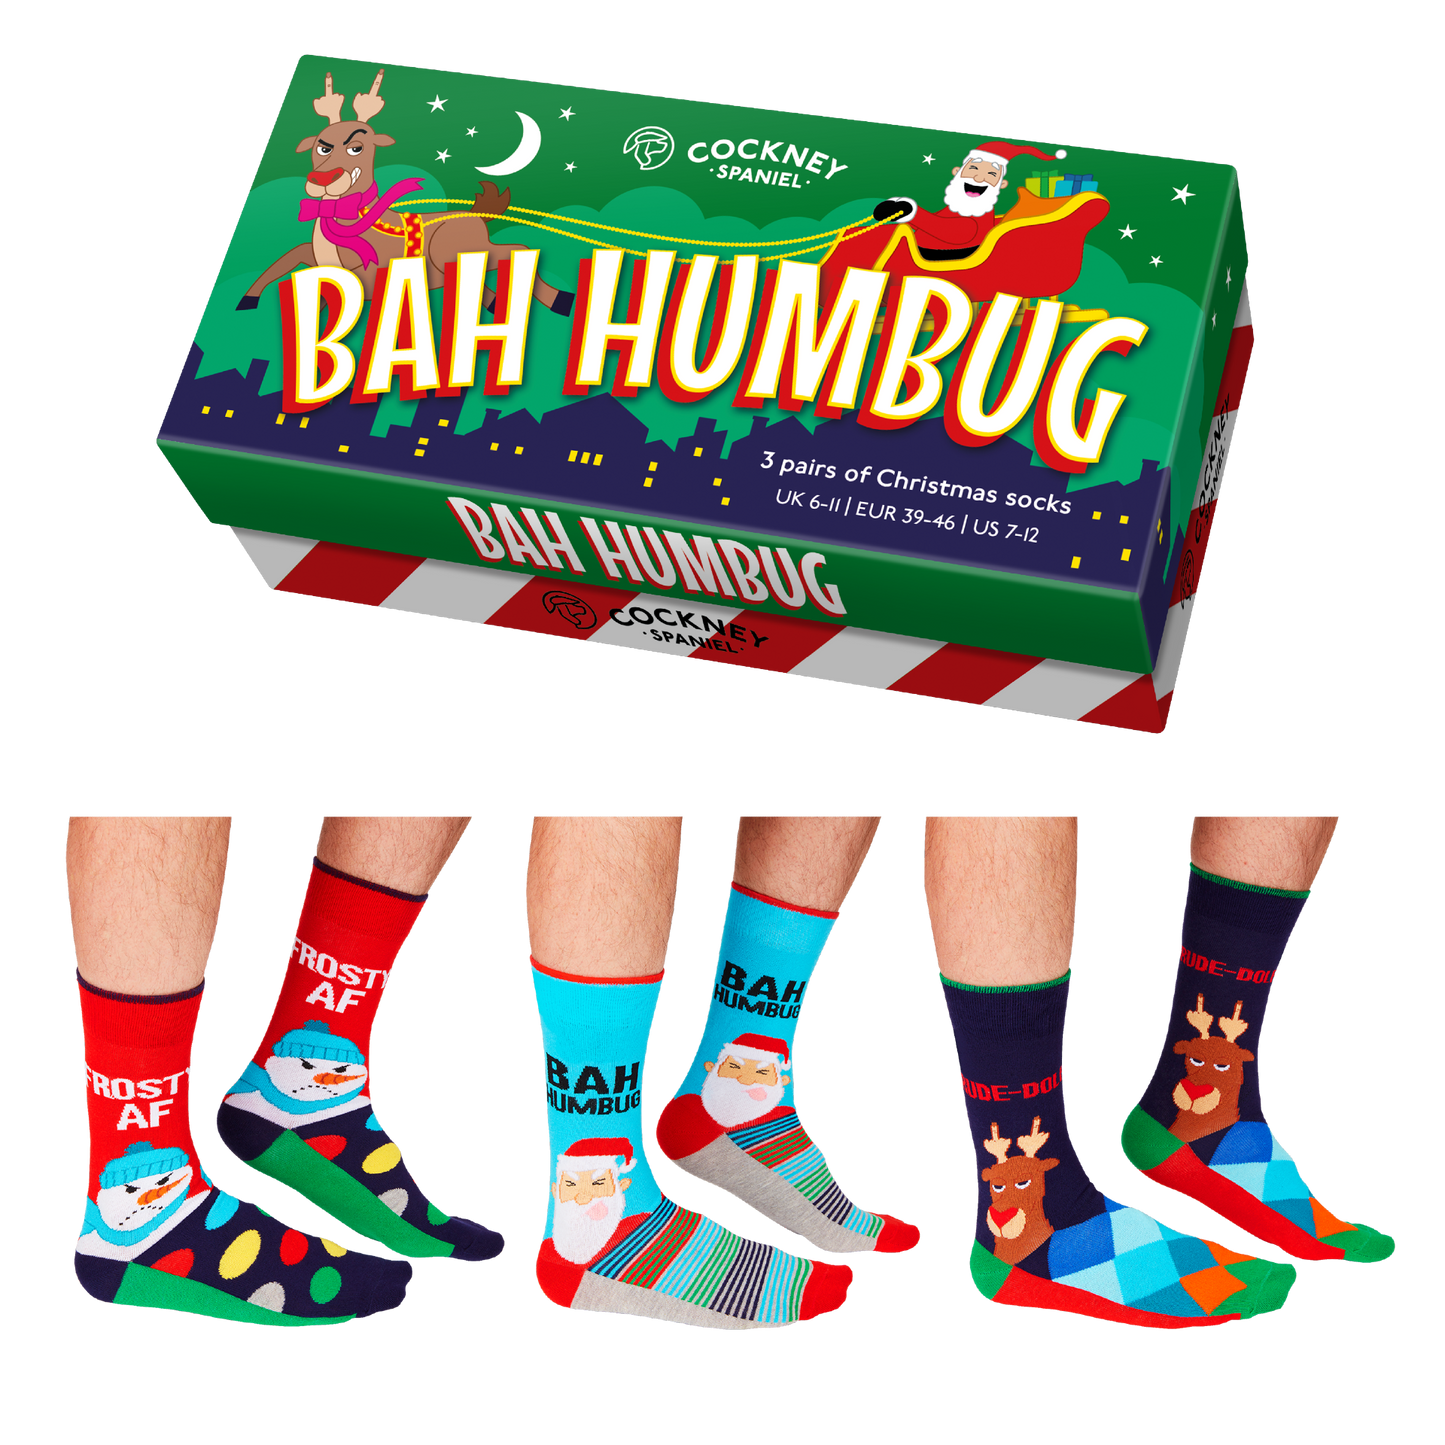 Cockney Spaniel - BAH HUMBUG Christmas Socks